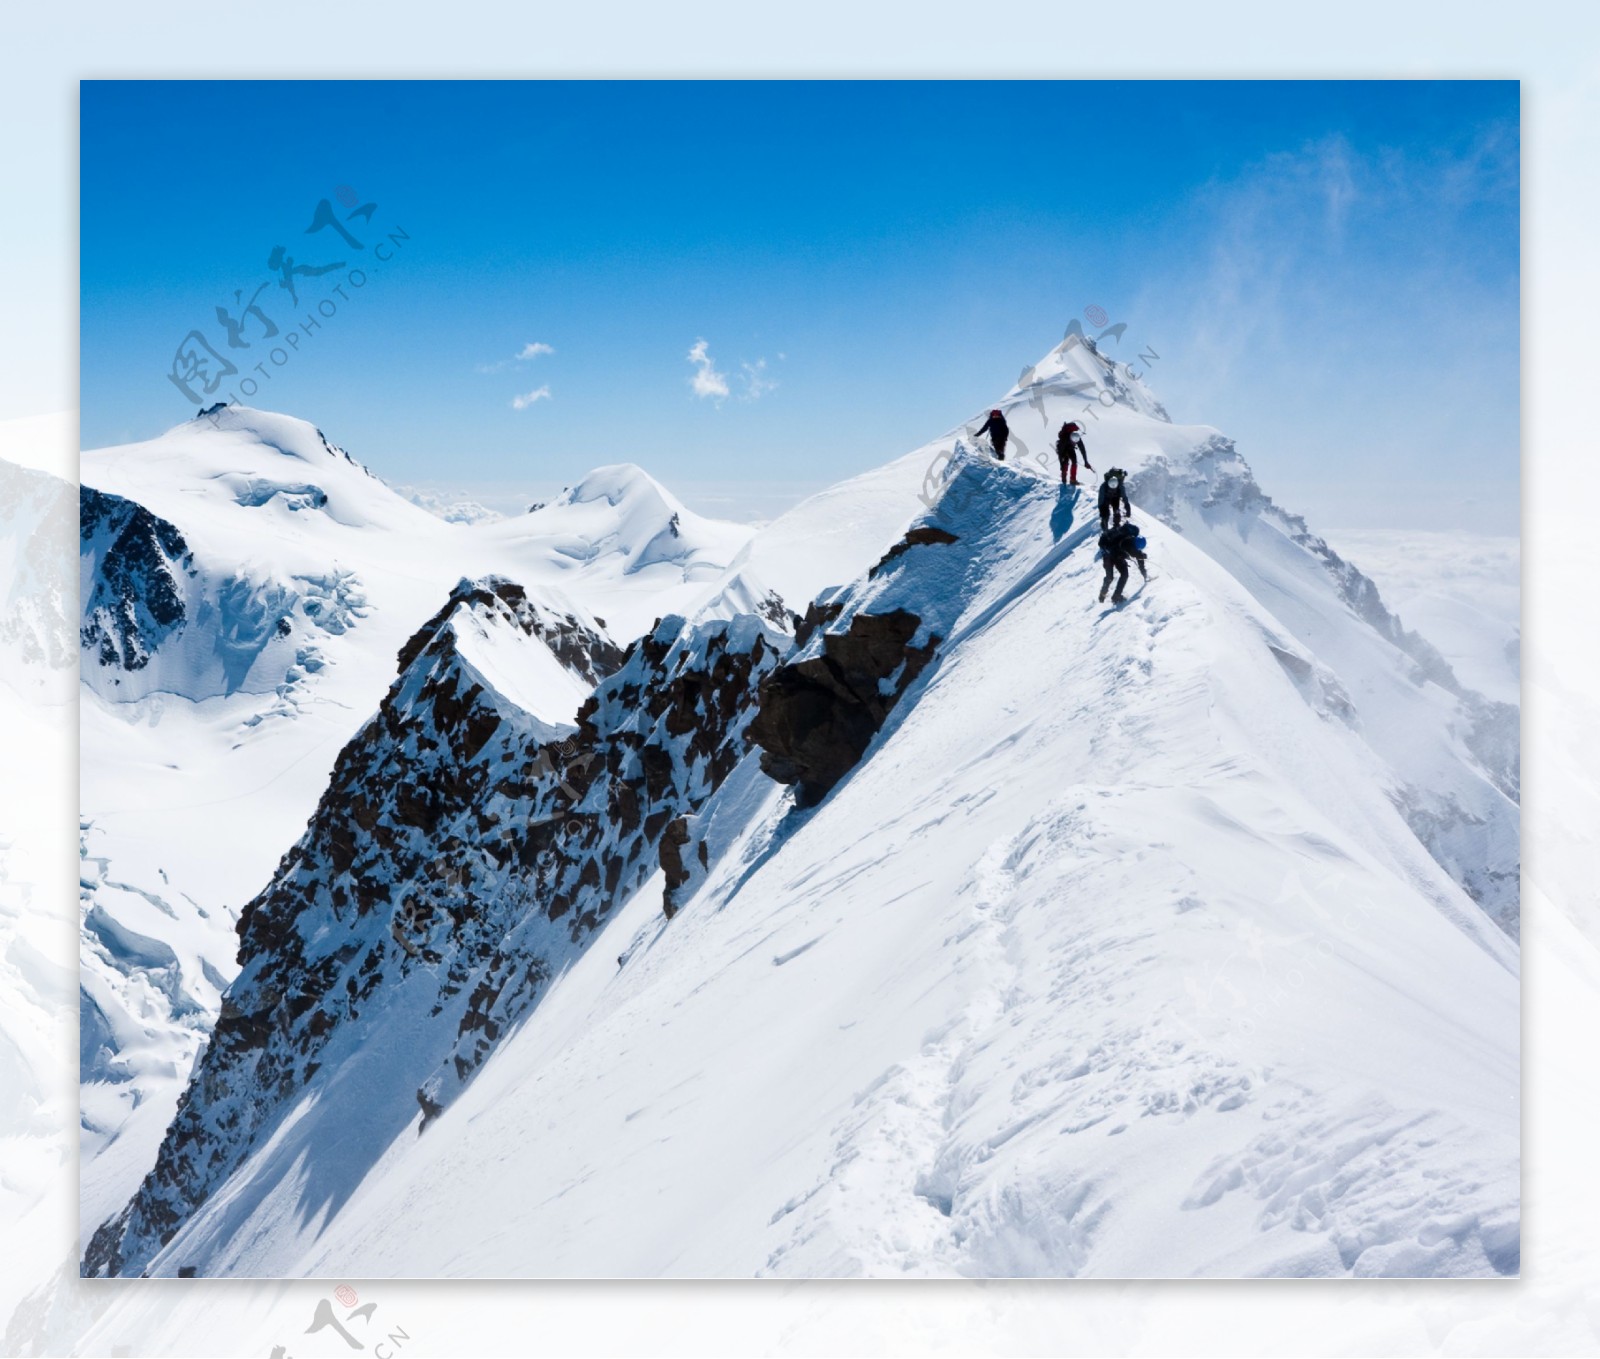 爬上雪山顶峰的冒险者图片